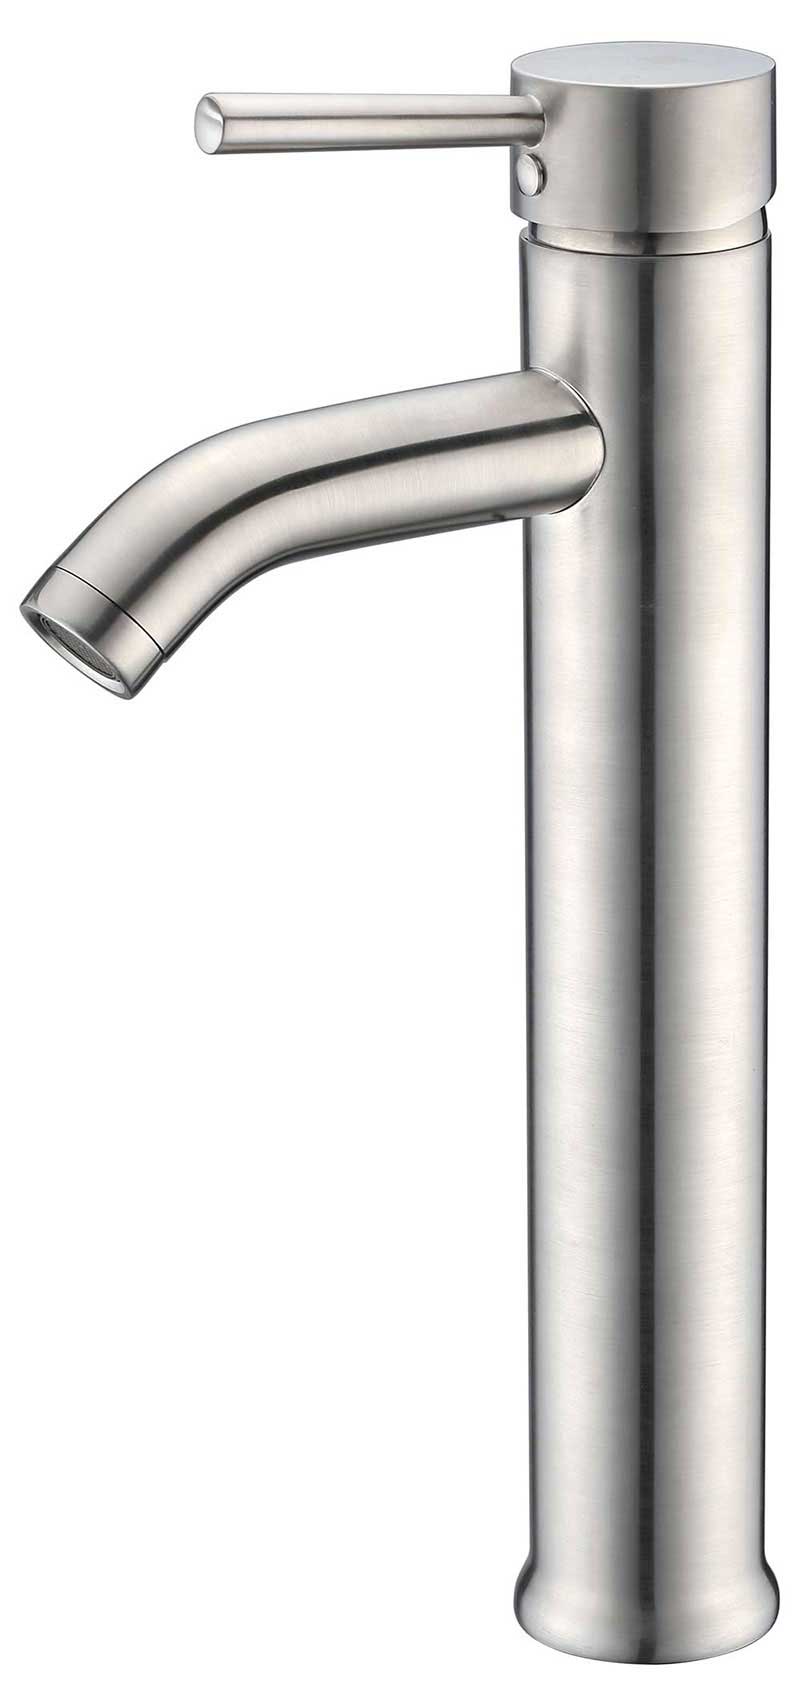 Anzzi Fann Single Handle Vessel Sink Faucet in Polished Chrome